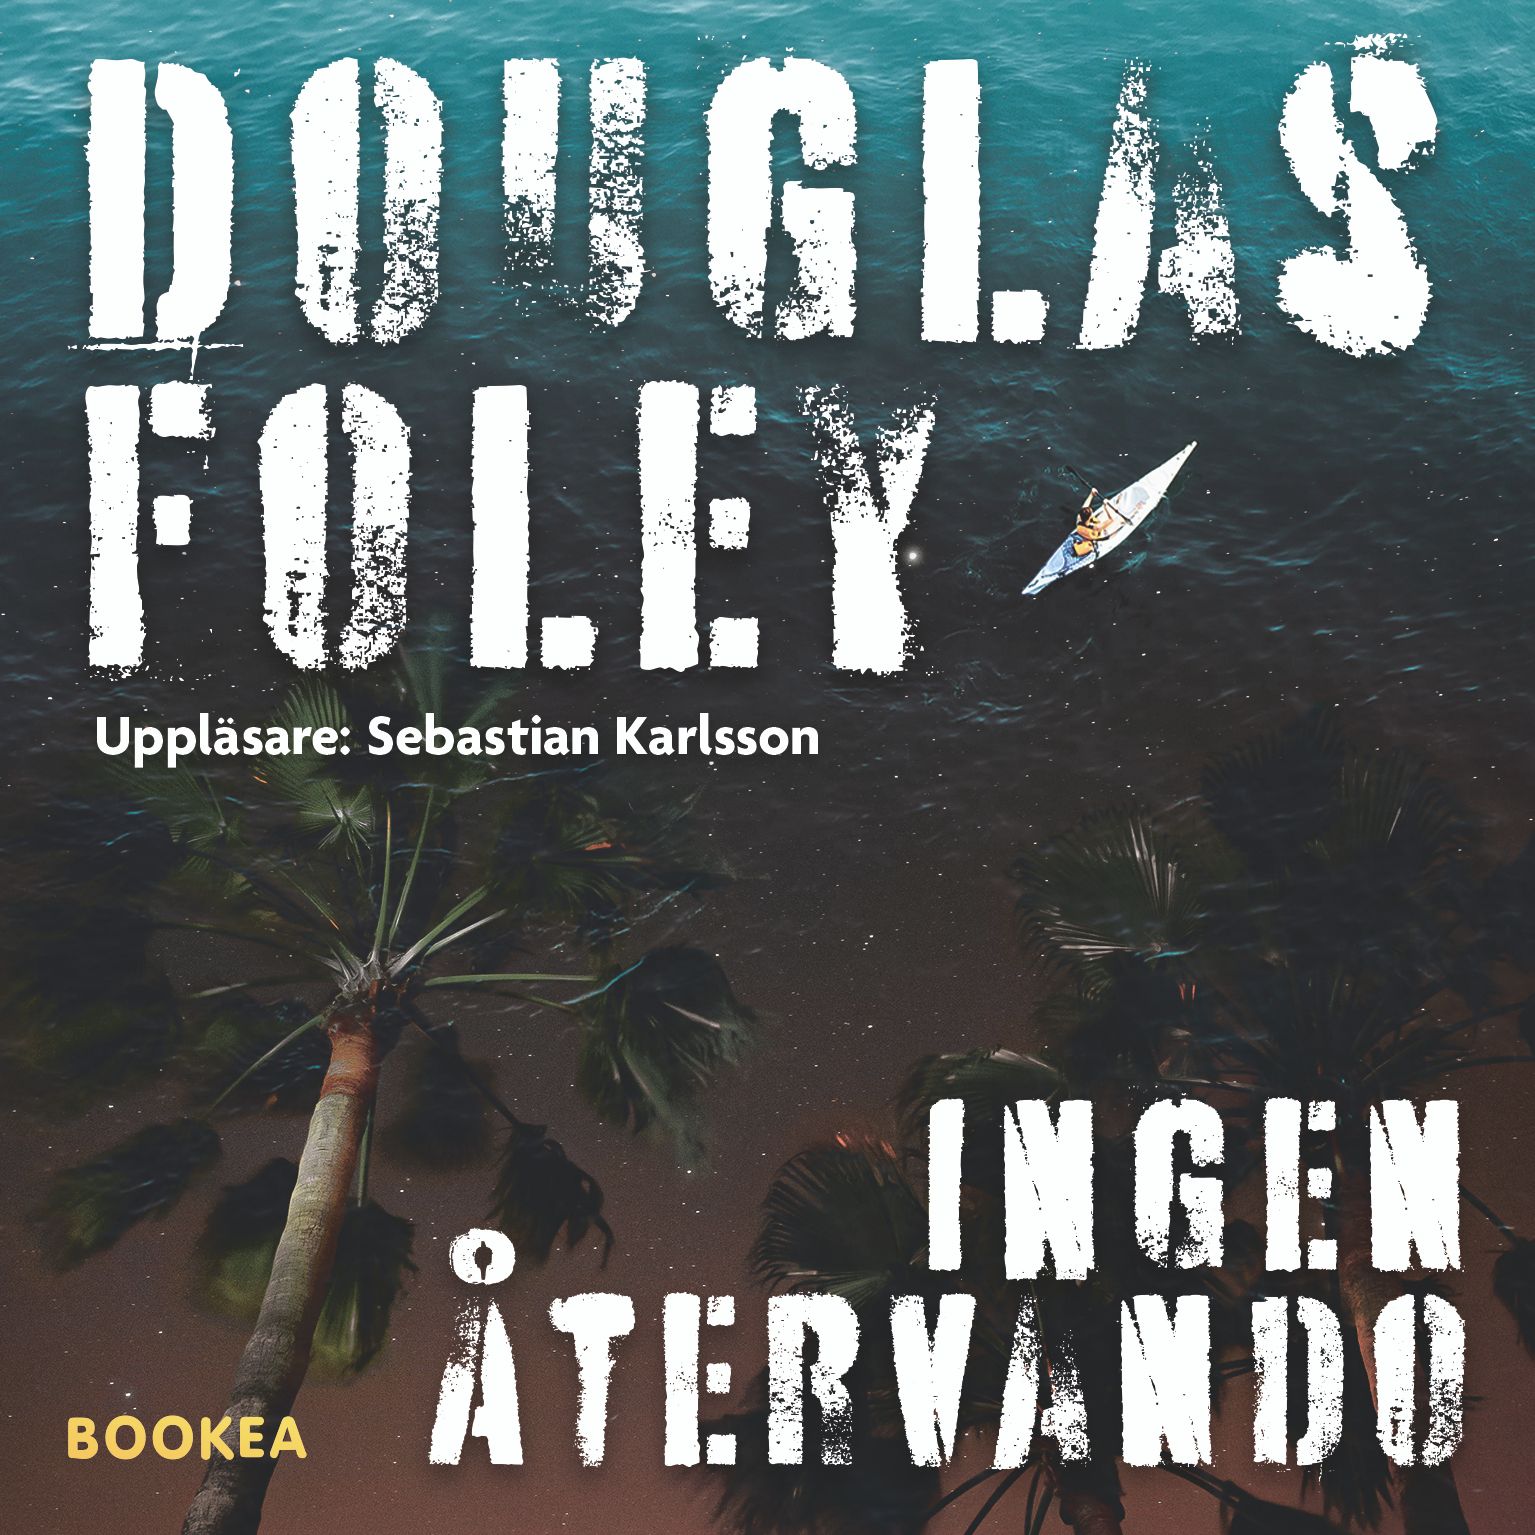 Ingen återvändo, ljudbok av Douglas Foley